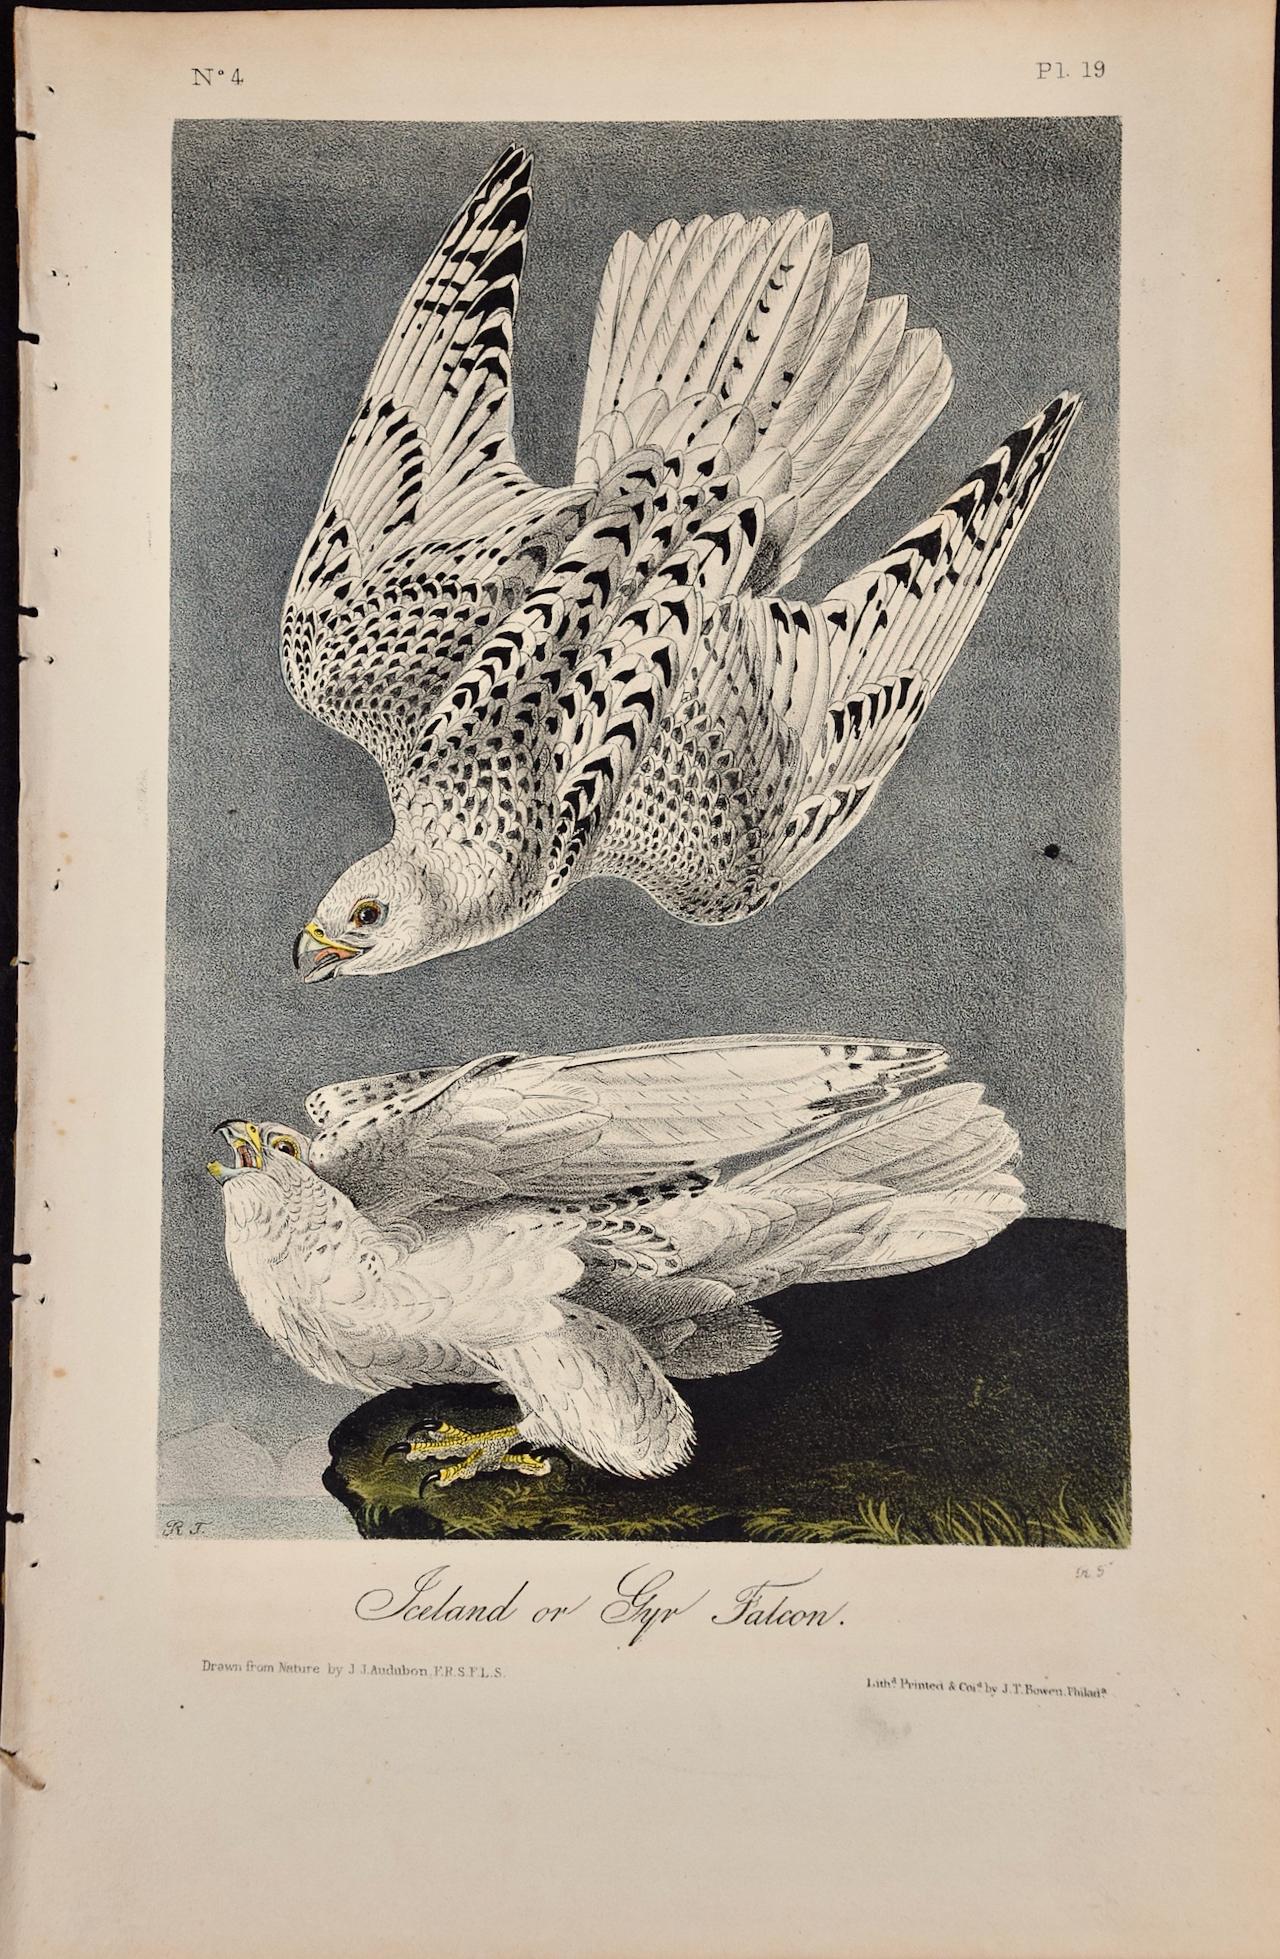 John James Audubon Animal Print – Iceland or Gyr Falcon: Ein Original, 1. Auflage. Handkolorierte Vogellithographie von Audubon 